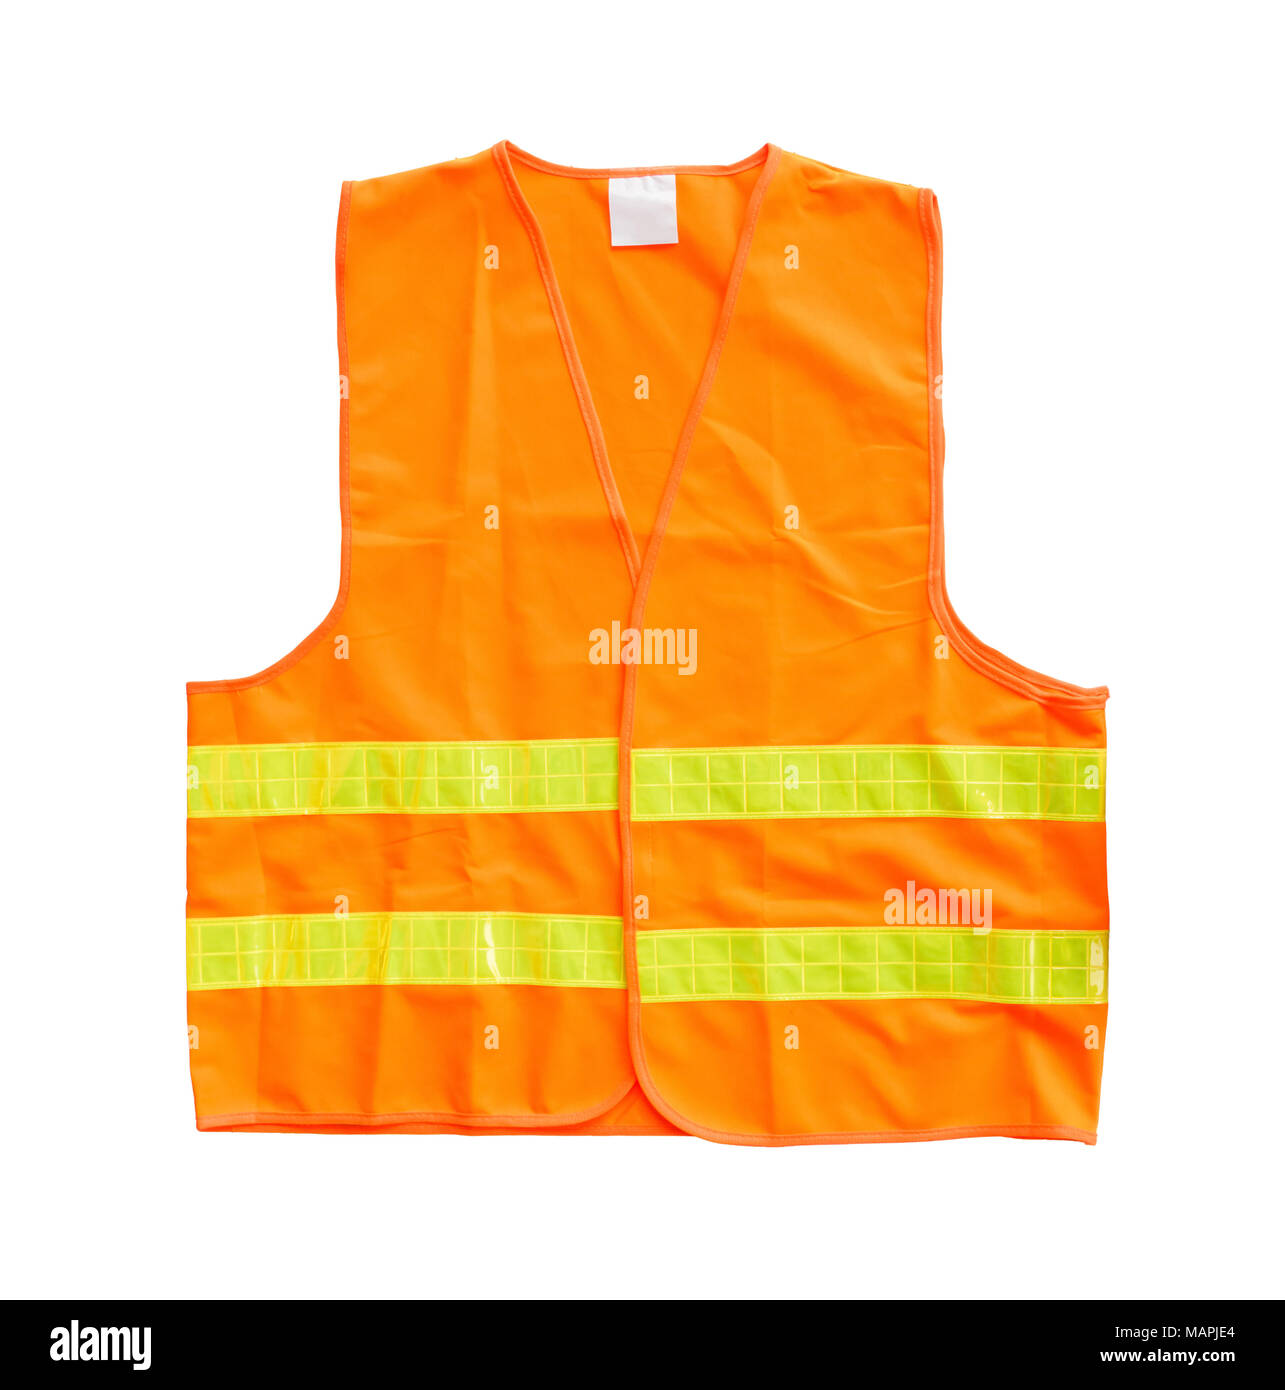 Safety orange vest isolated on a white background Stock Photo